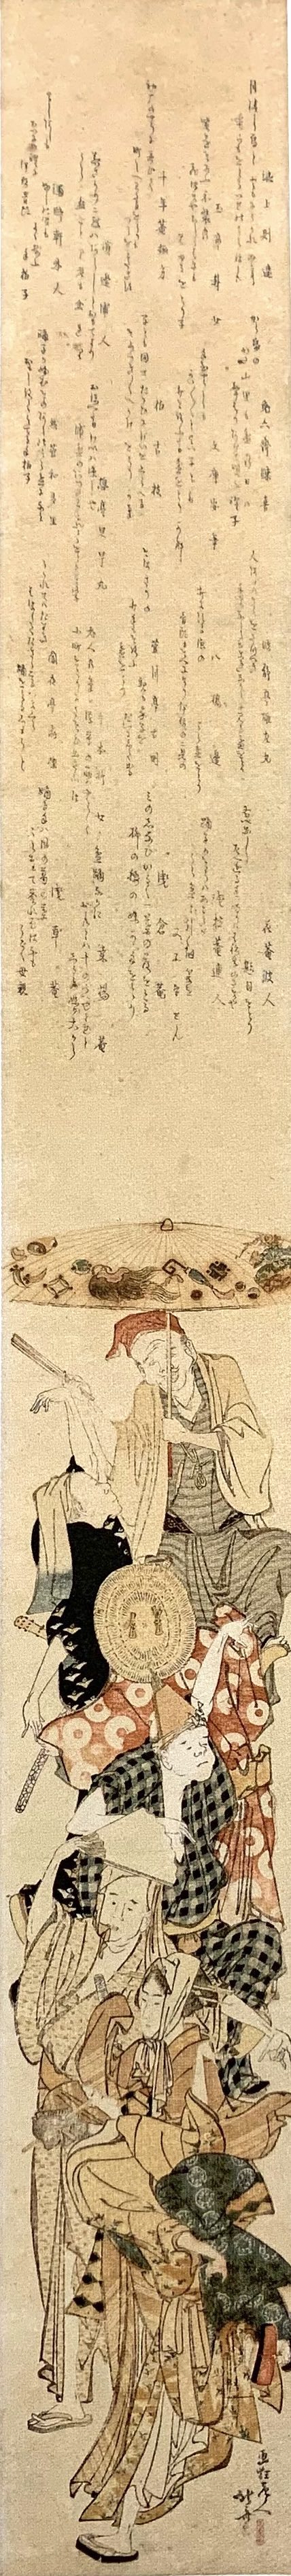 『盆踊り図』（葛飾北斎 画／1804〜05年頃）